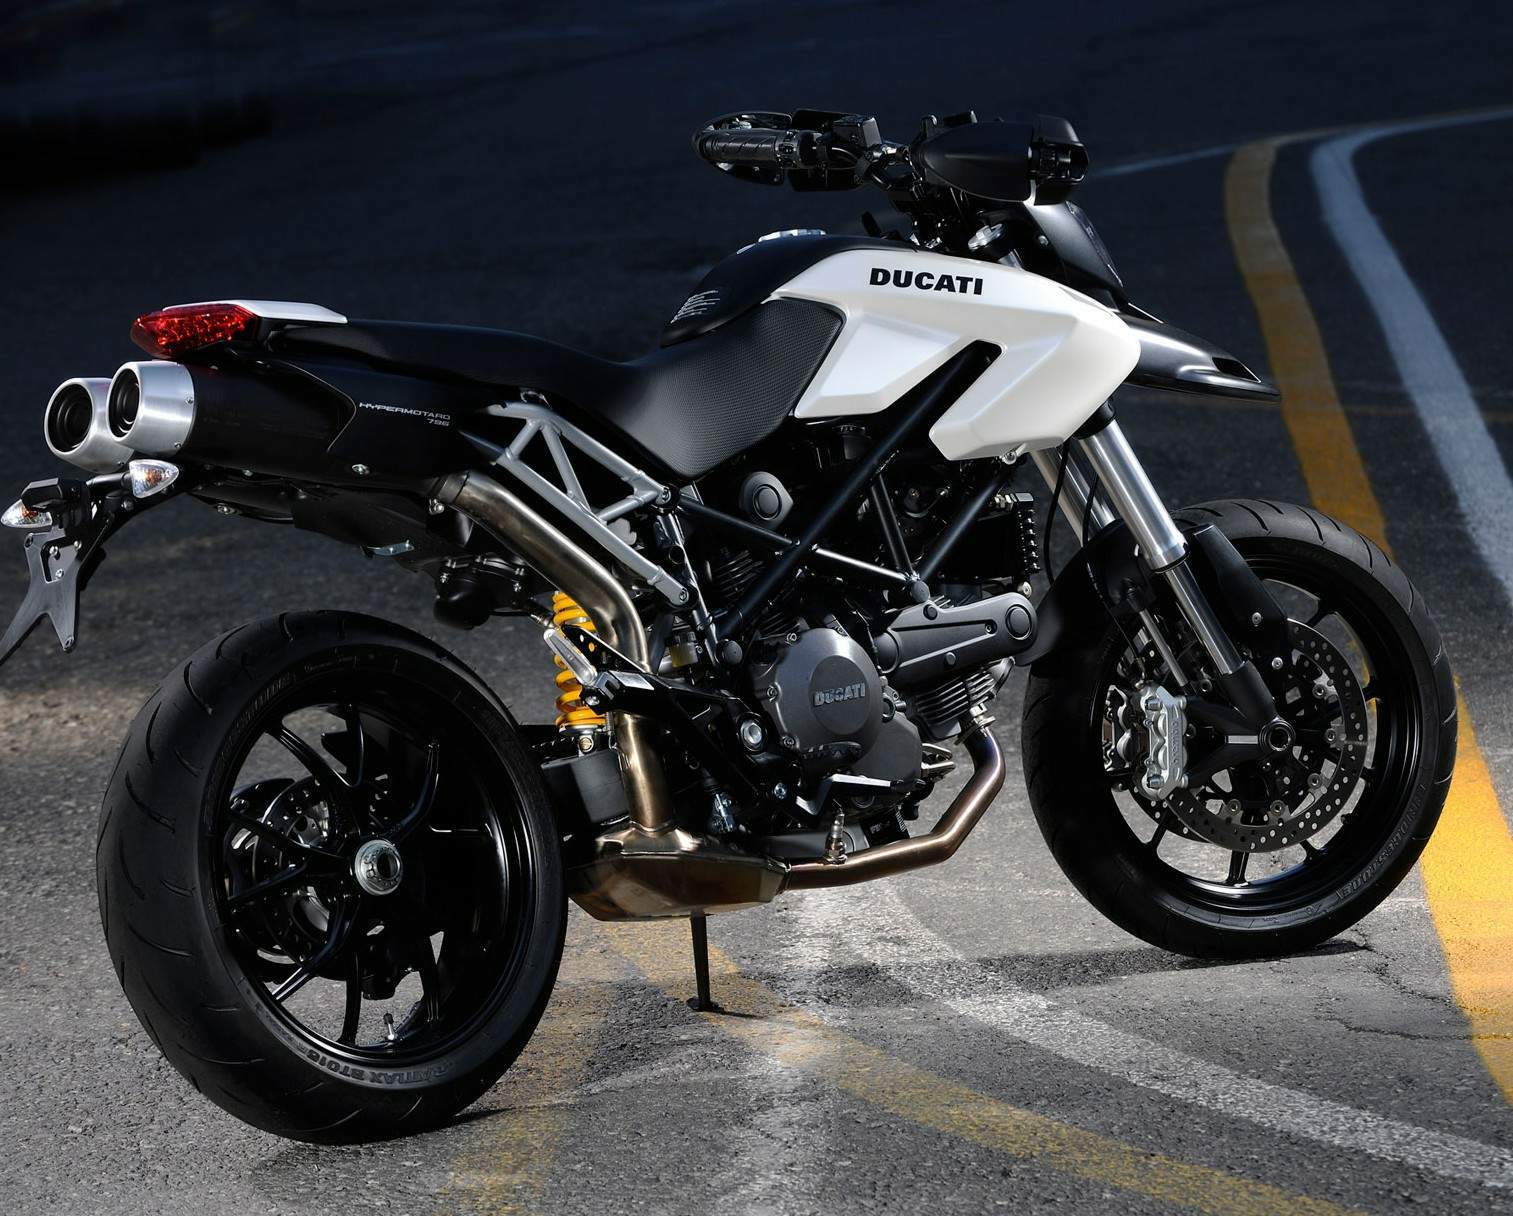 Ducati Hypermotard 796 (2012) especificaciones técnicas